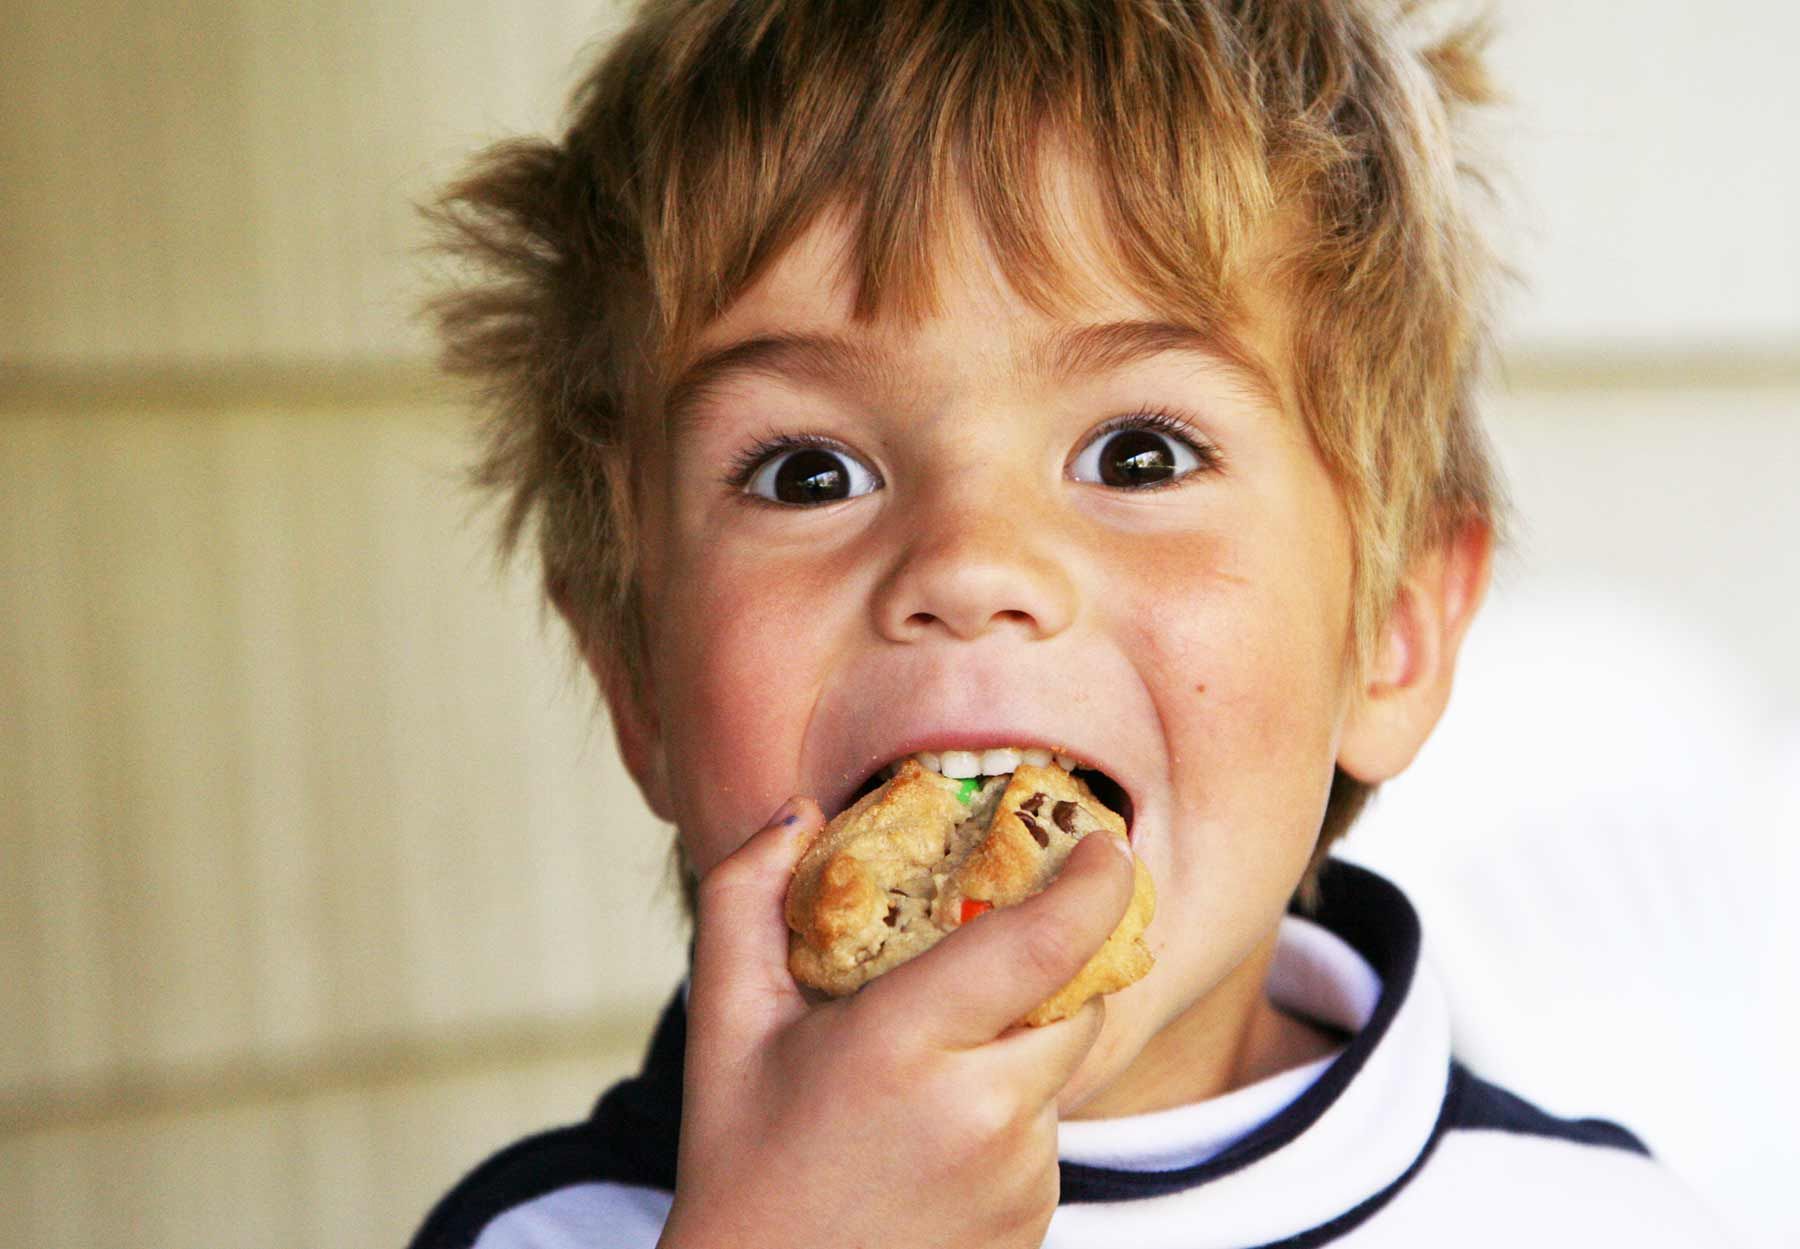 Ilustrasi anak kecil makan biskuit